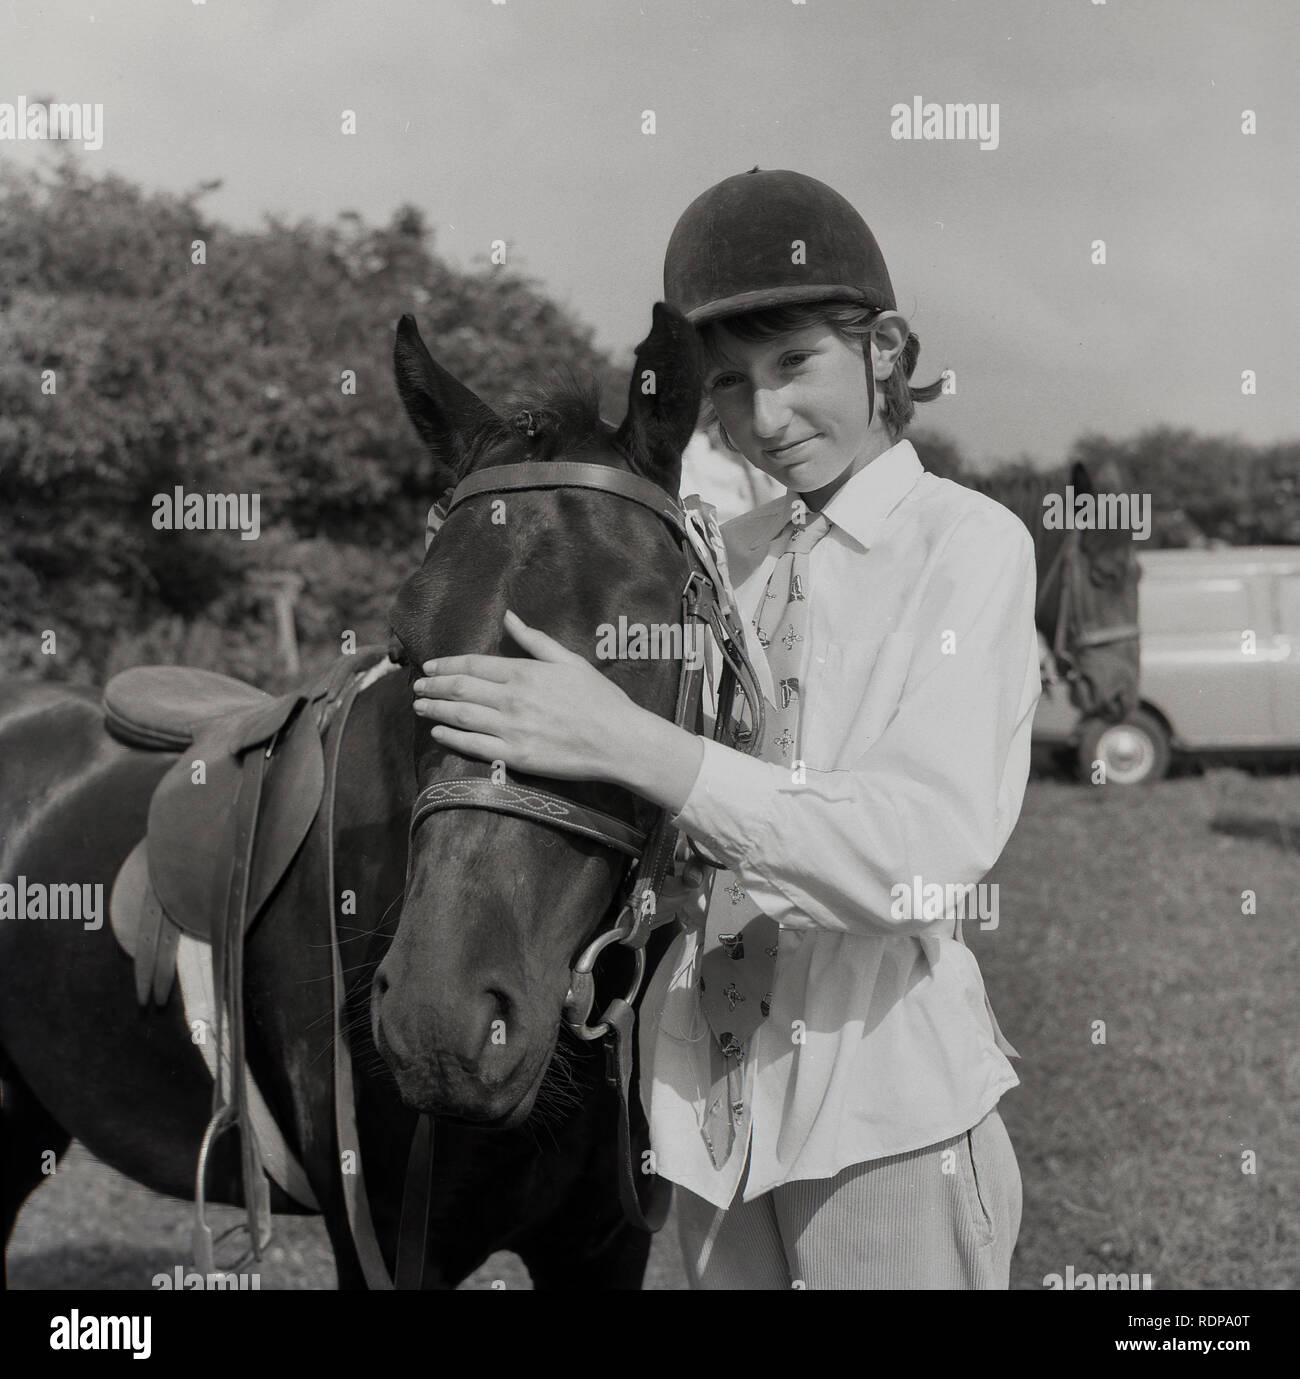 1967, historisch, draußen auf einem Feld bei einer Reitveranstaltung, Mädchen Reiterin streichelte die Stirn ihres Pferdes, England, Großbritannien. Stockfoto